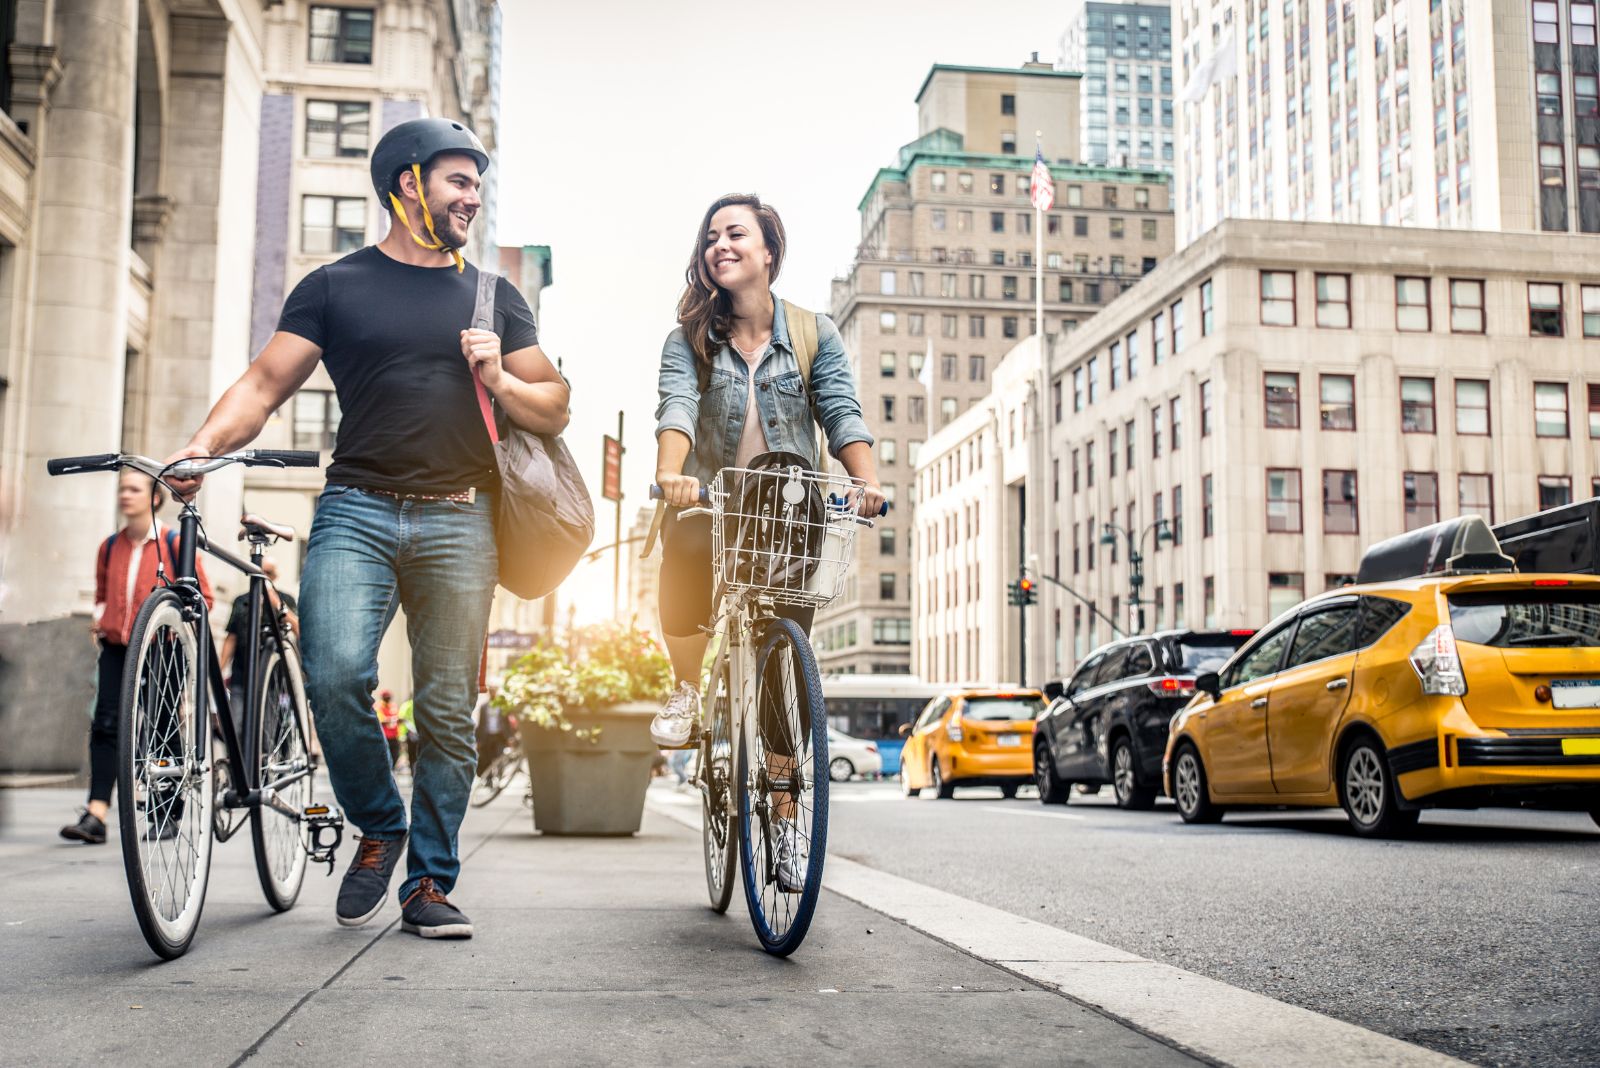 Some people live in the city. Прогулка на велосипеде в городе. Велосипед в городе. Велосипедист в городе. Люди на велосипедах в городе.